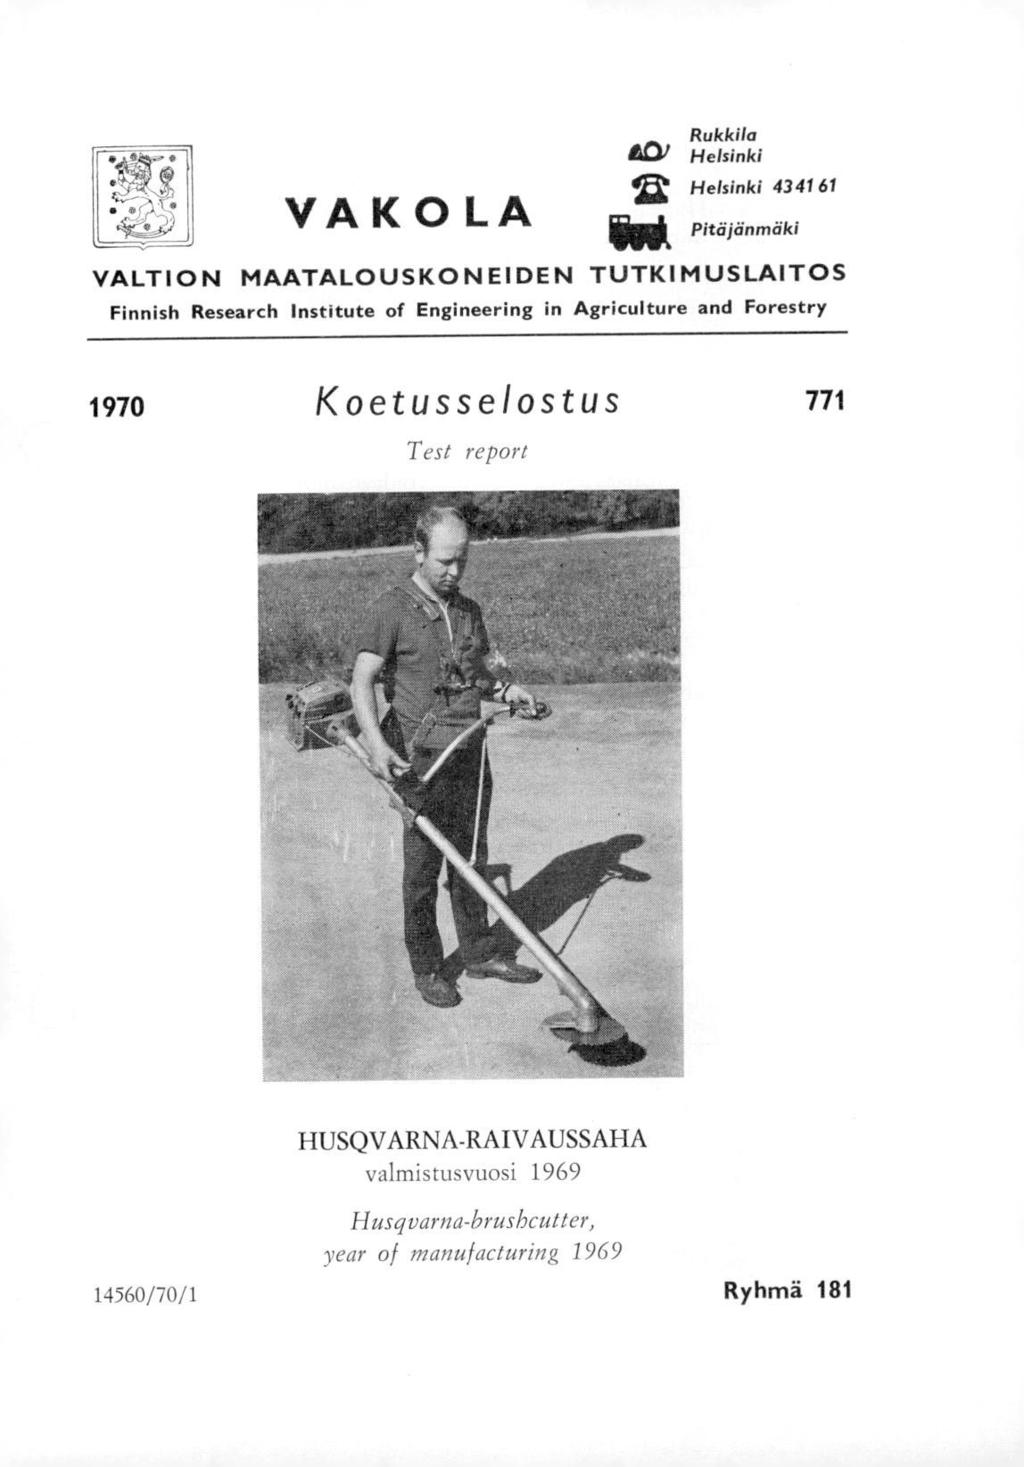 VAKOLA Rukkila &Dl Helsinki 1; Helsinki 4341 61 Pitäjänmäki VALTION MAATALOUSKONEIDEN TUTKIMUSLAITOS Finnish Research Institute of Engineering in Agriculture